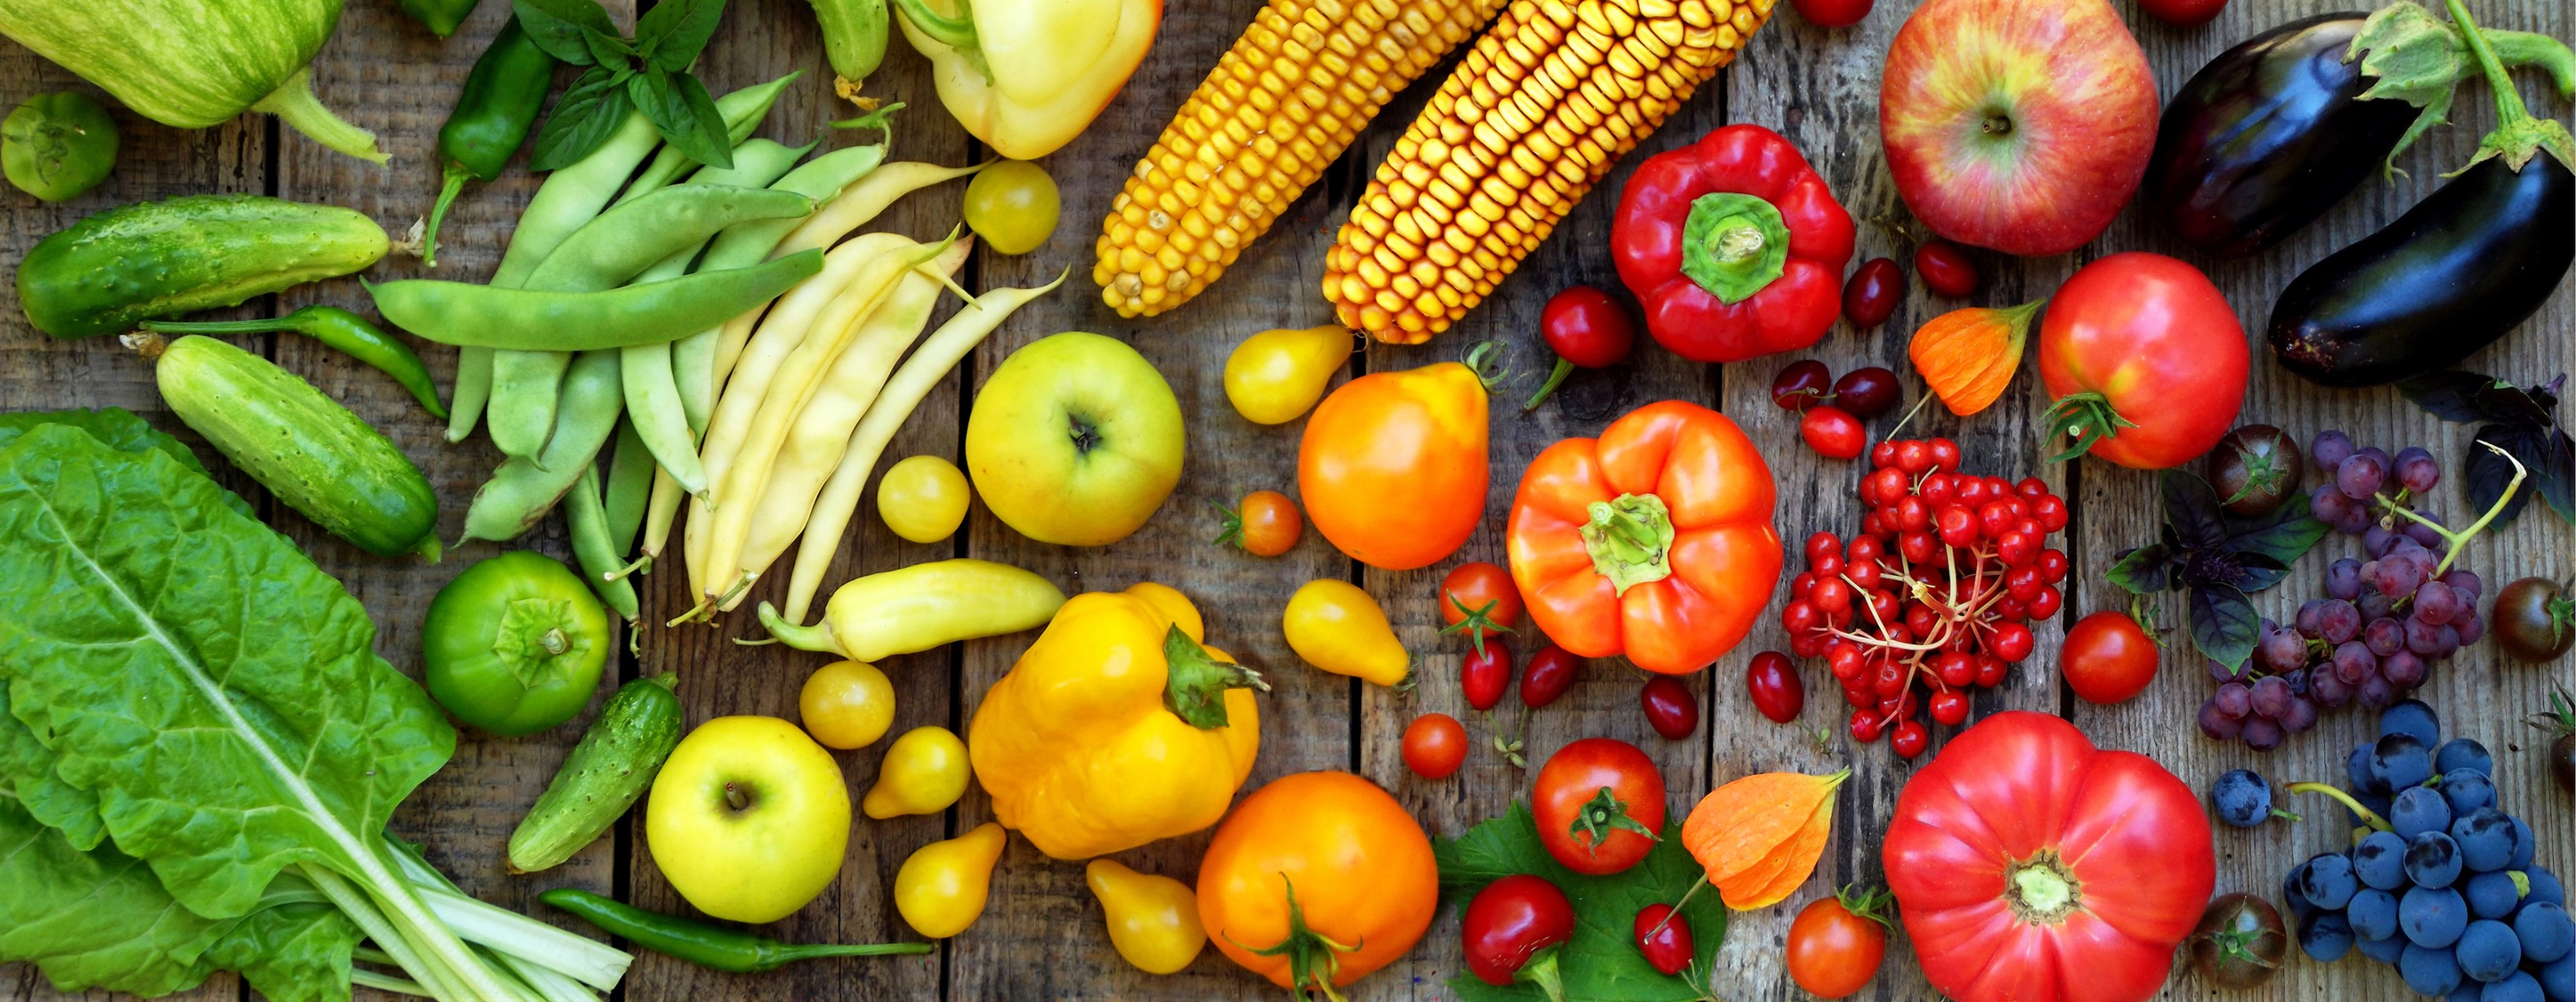 Harvest Market Natural Foods